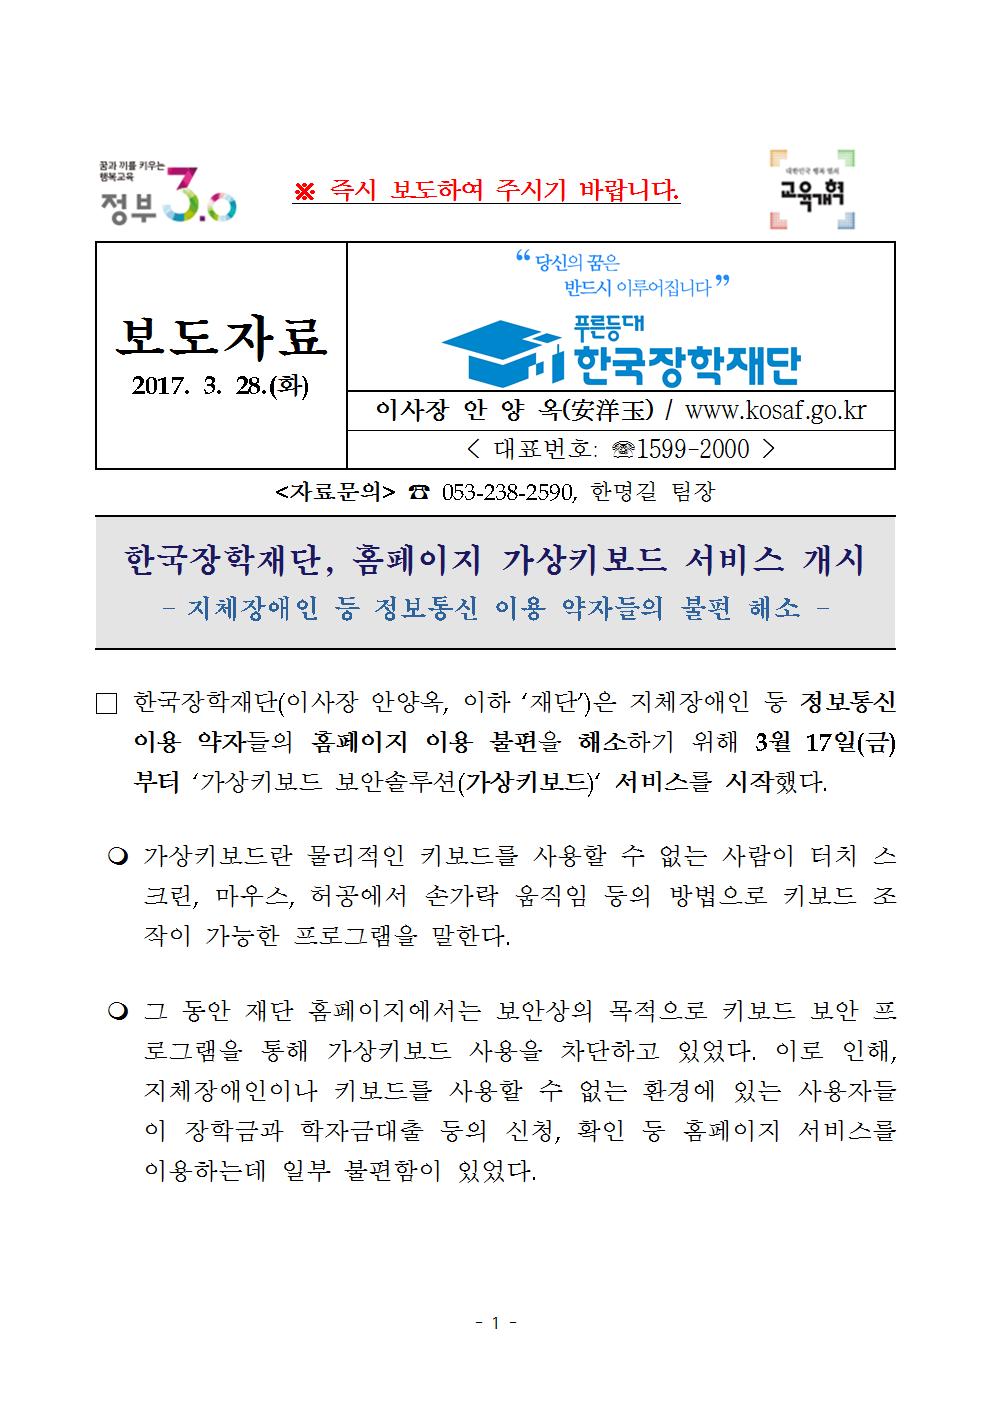 03-28(화)[보도자료] 한국장학재단, 홈페이지 가상키보드 서비스 개시001.jpg